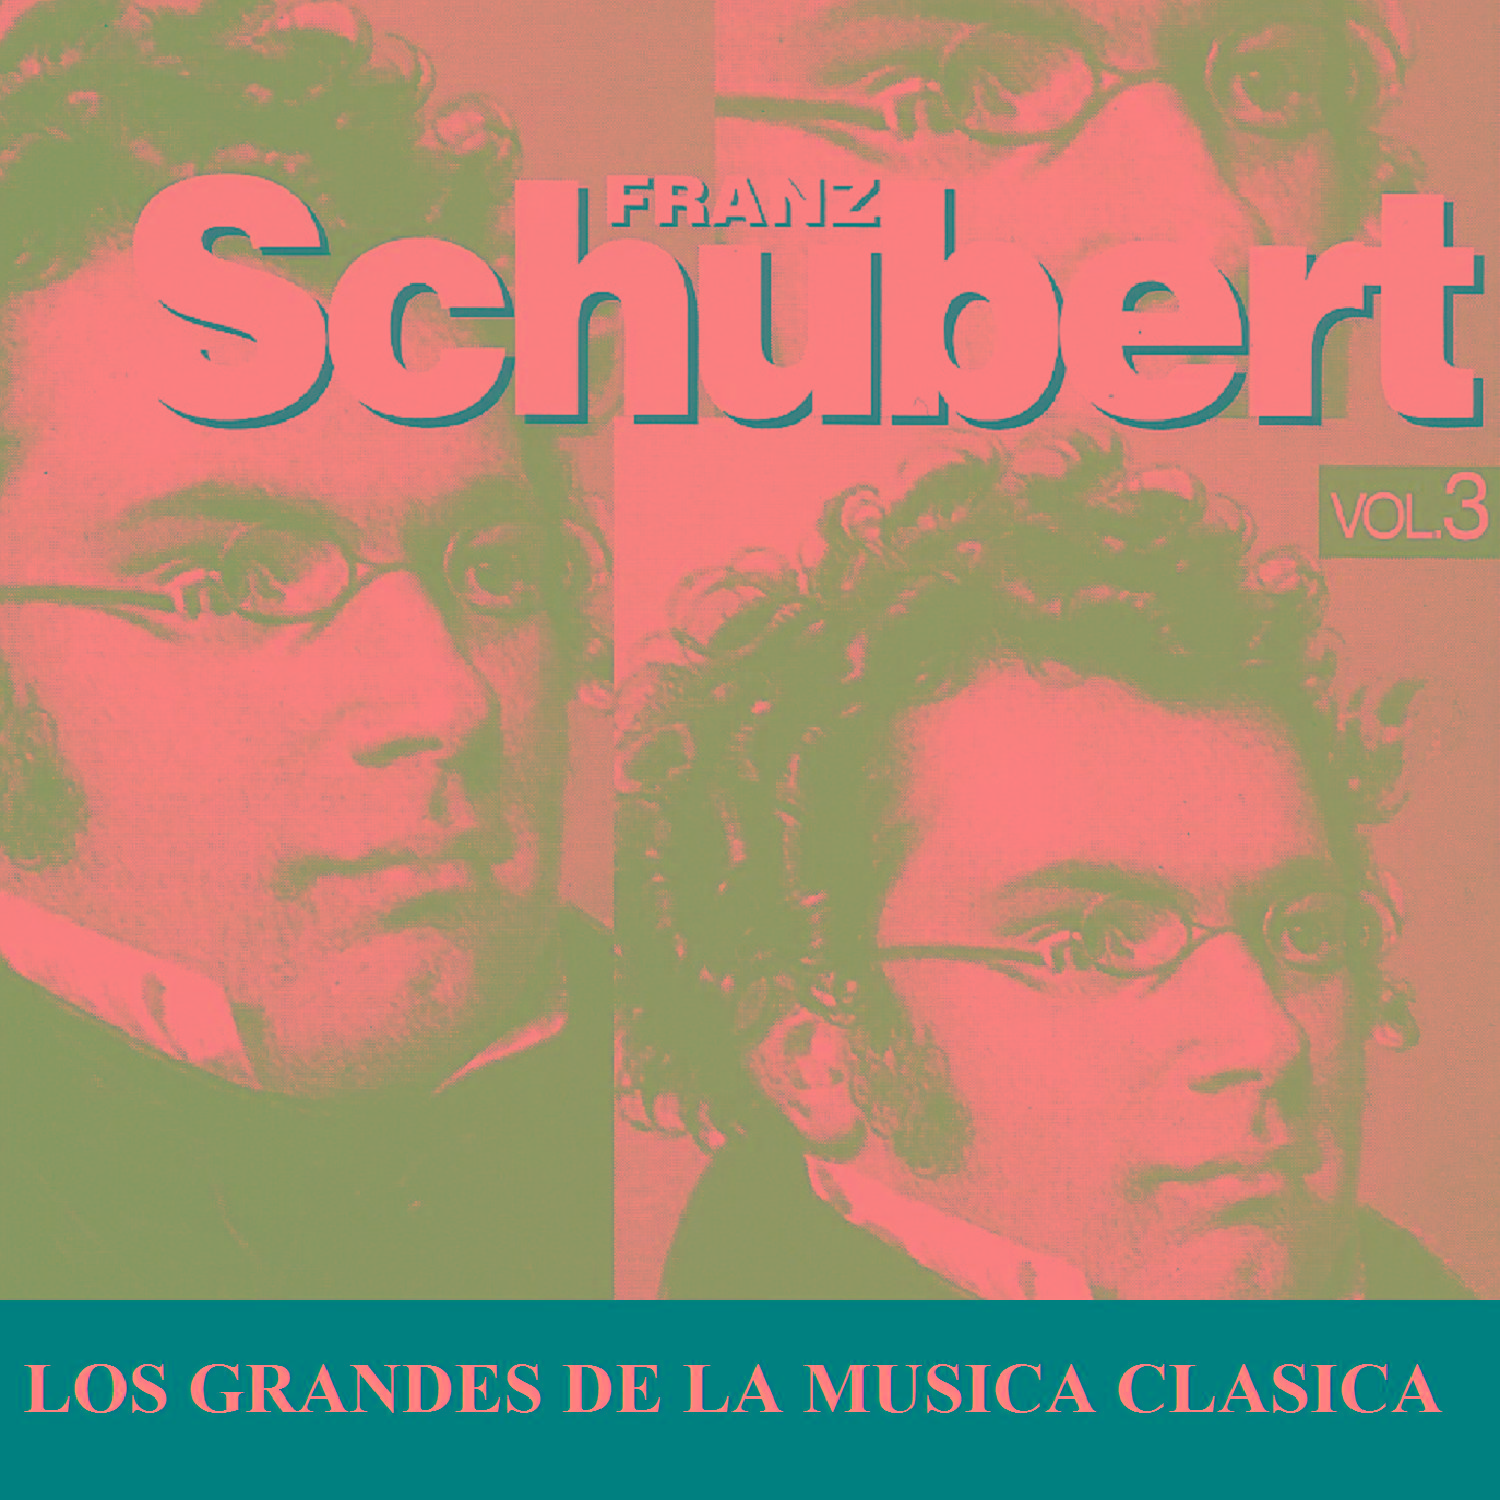 Los Grandes de la Musica Clasica - Franz Schubert Vol. 3